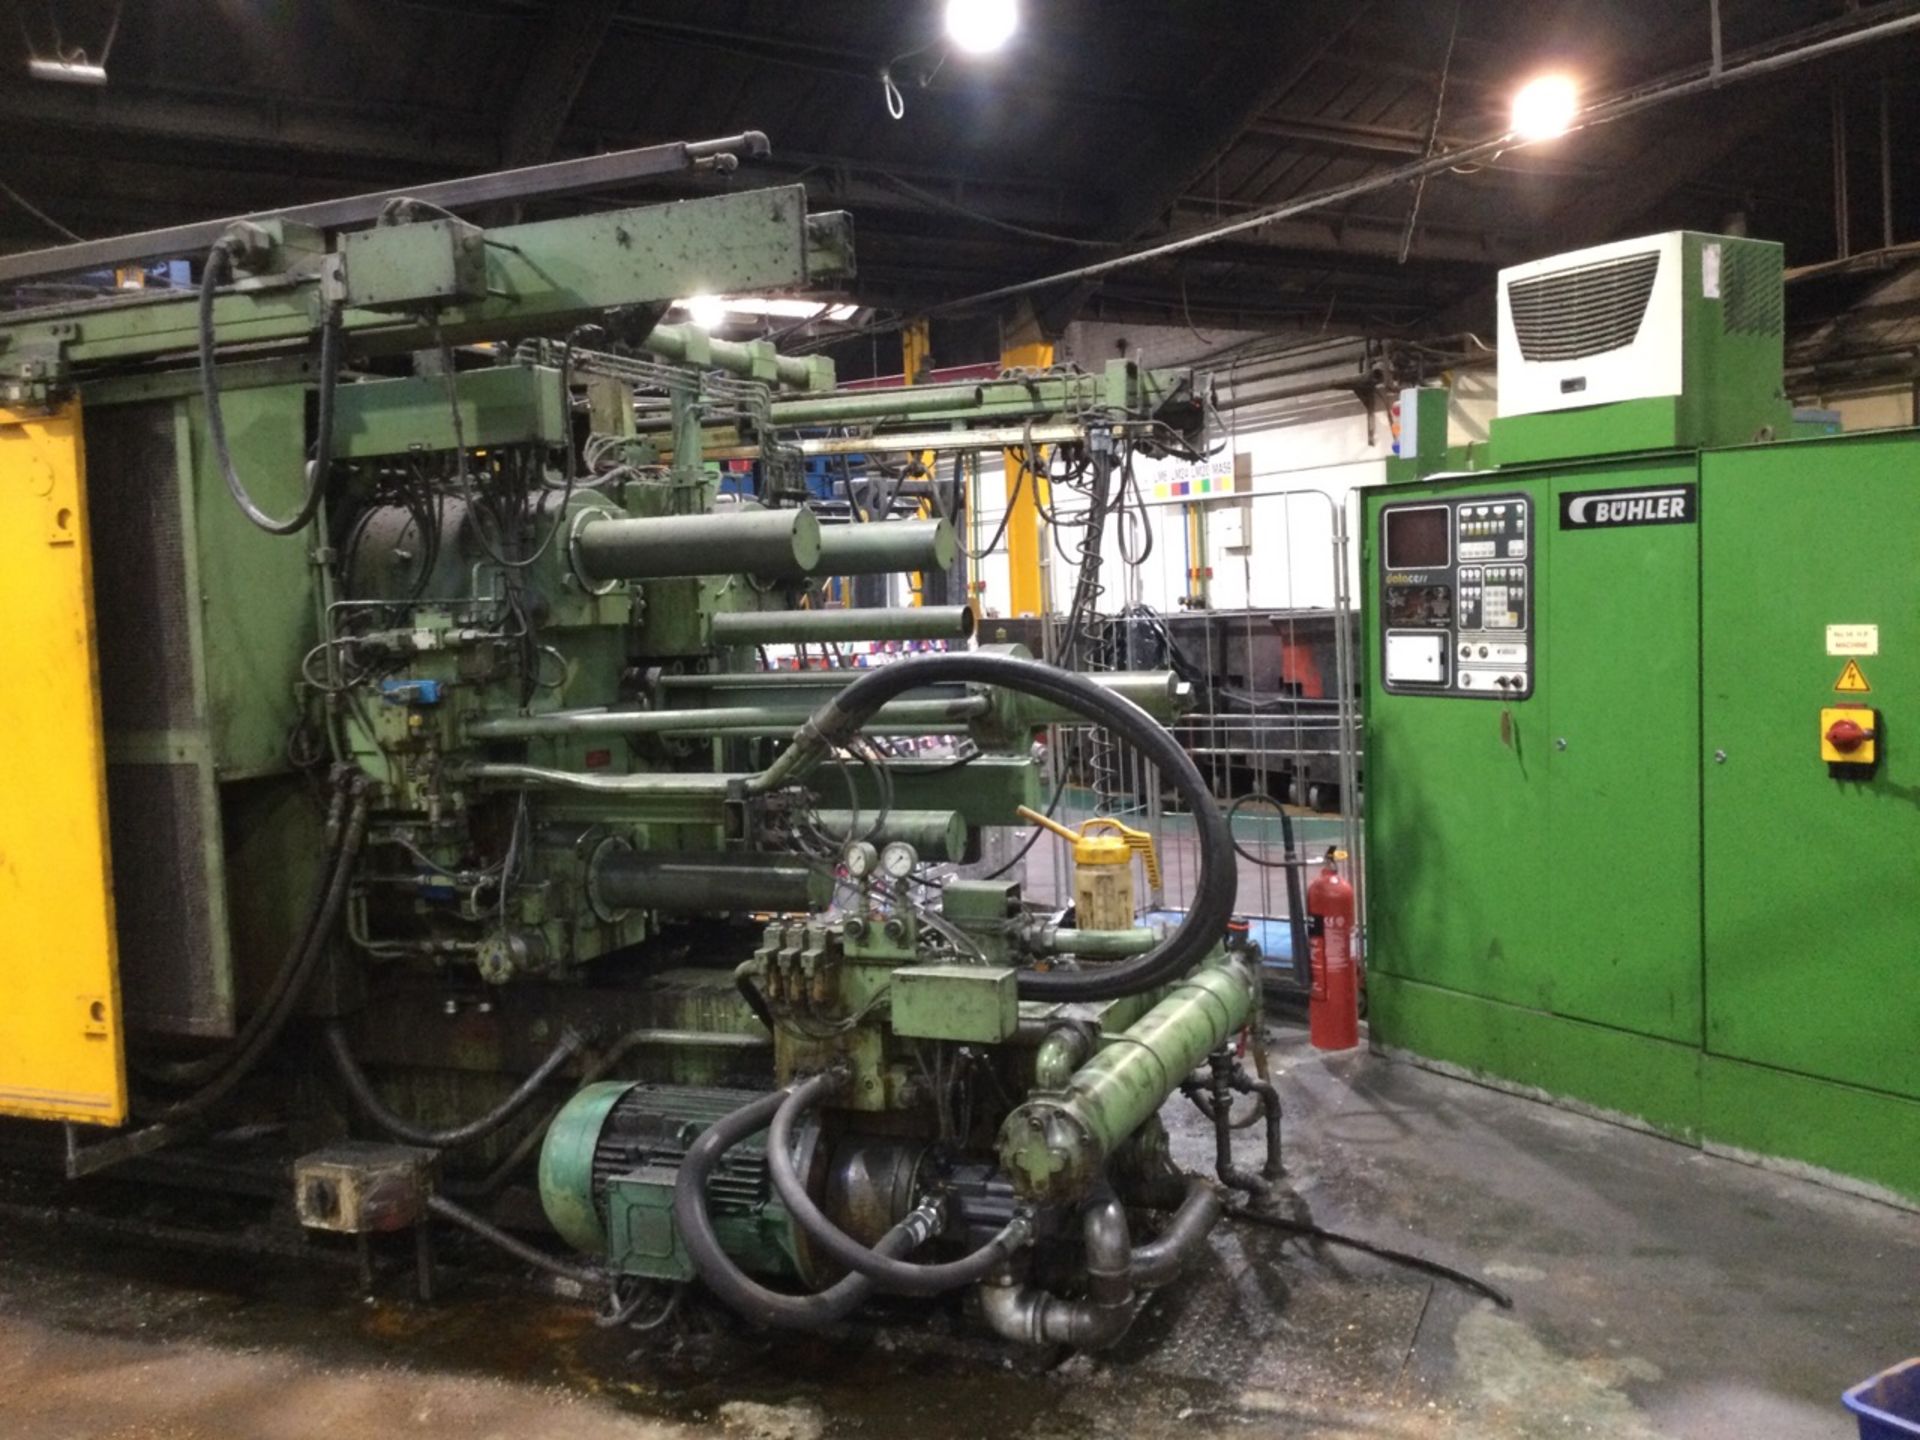 1 Buhler, 400T GDM-H-400 die-casting machine, Seri - Image 3 of 3